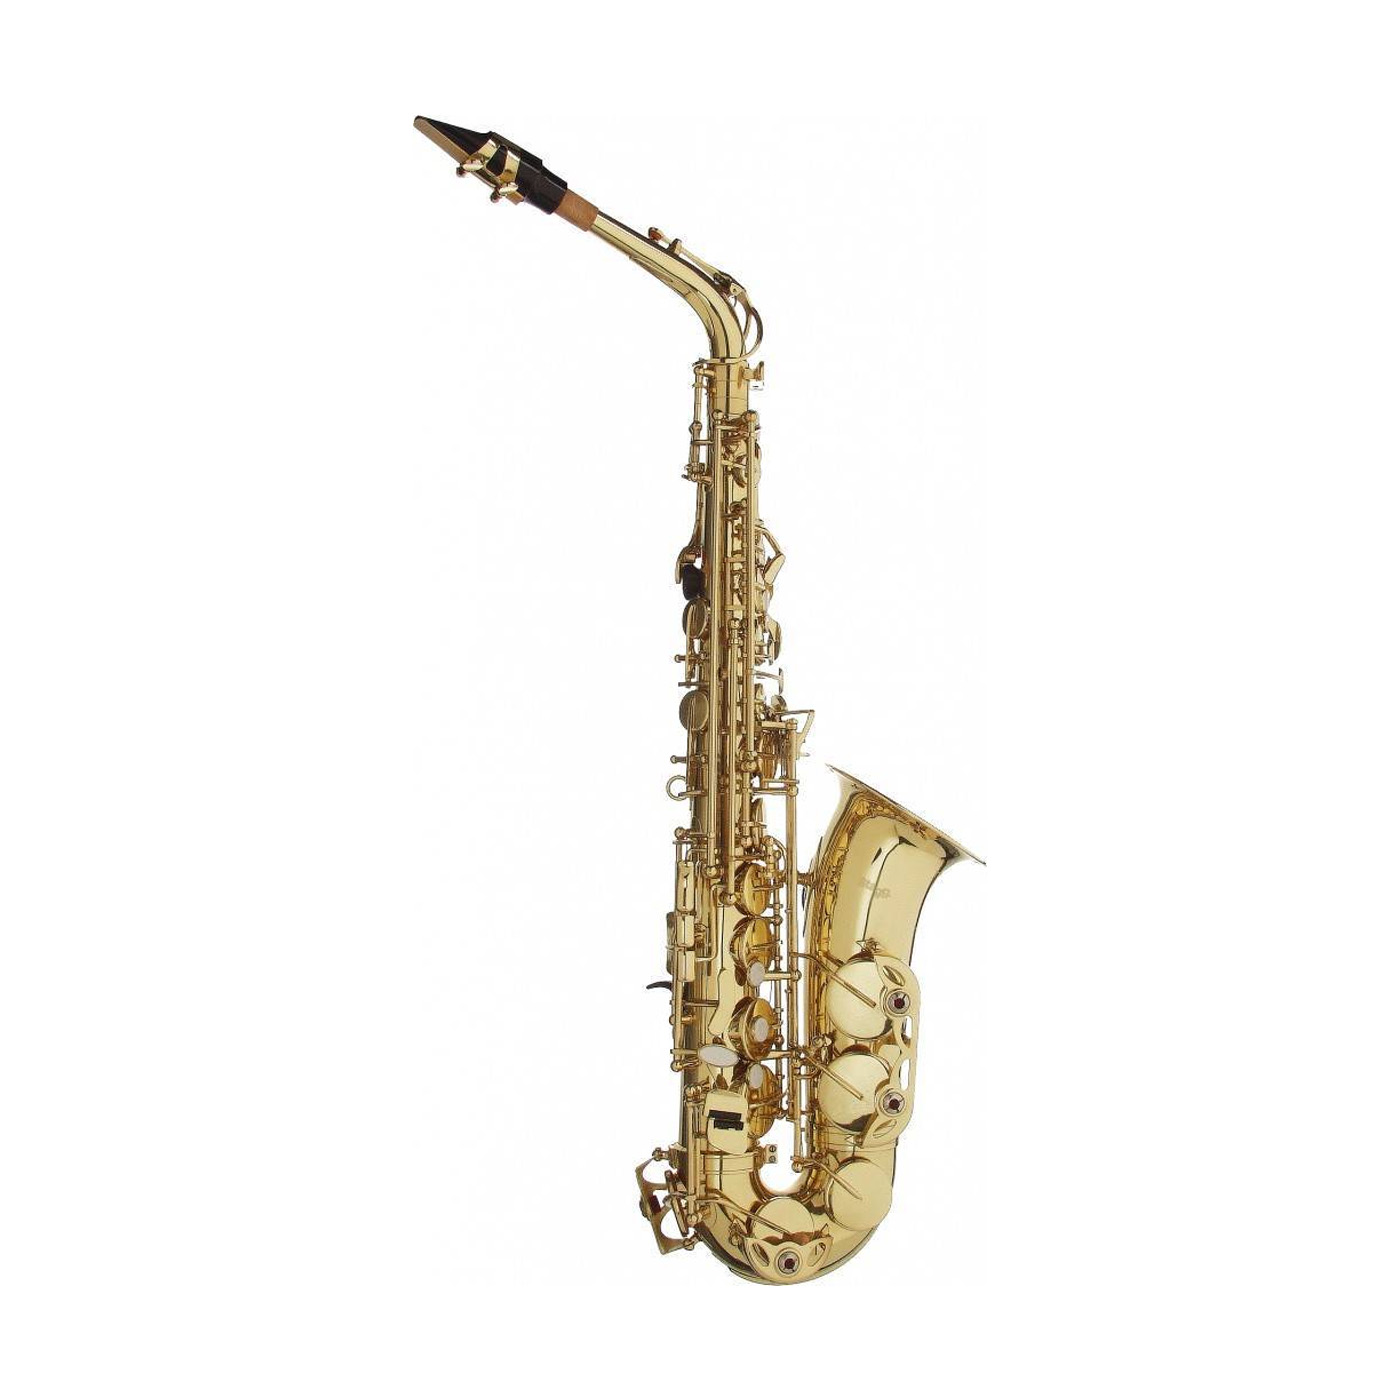 Классический саксофон. Саксофон тенор Roy Benson TS-202 BB. Brahner саксофон Альт.